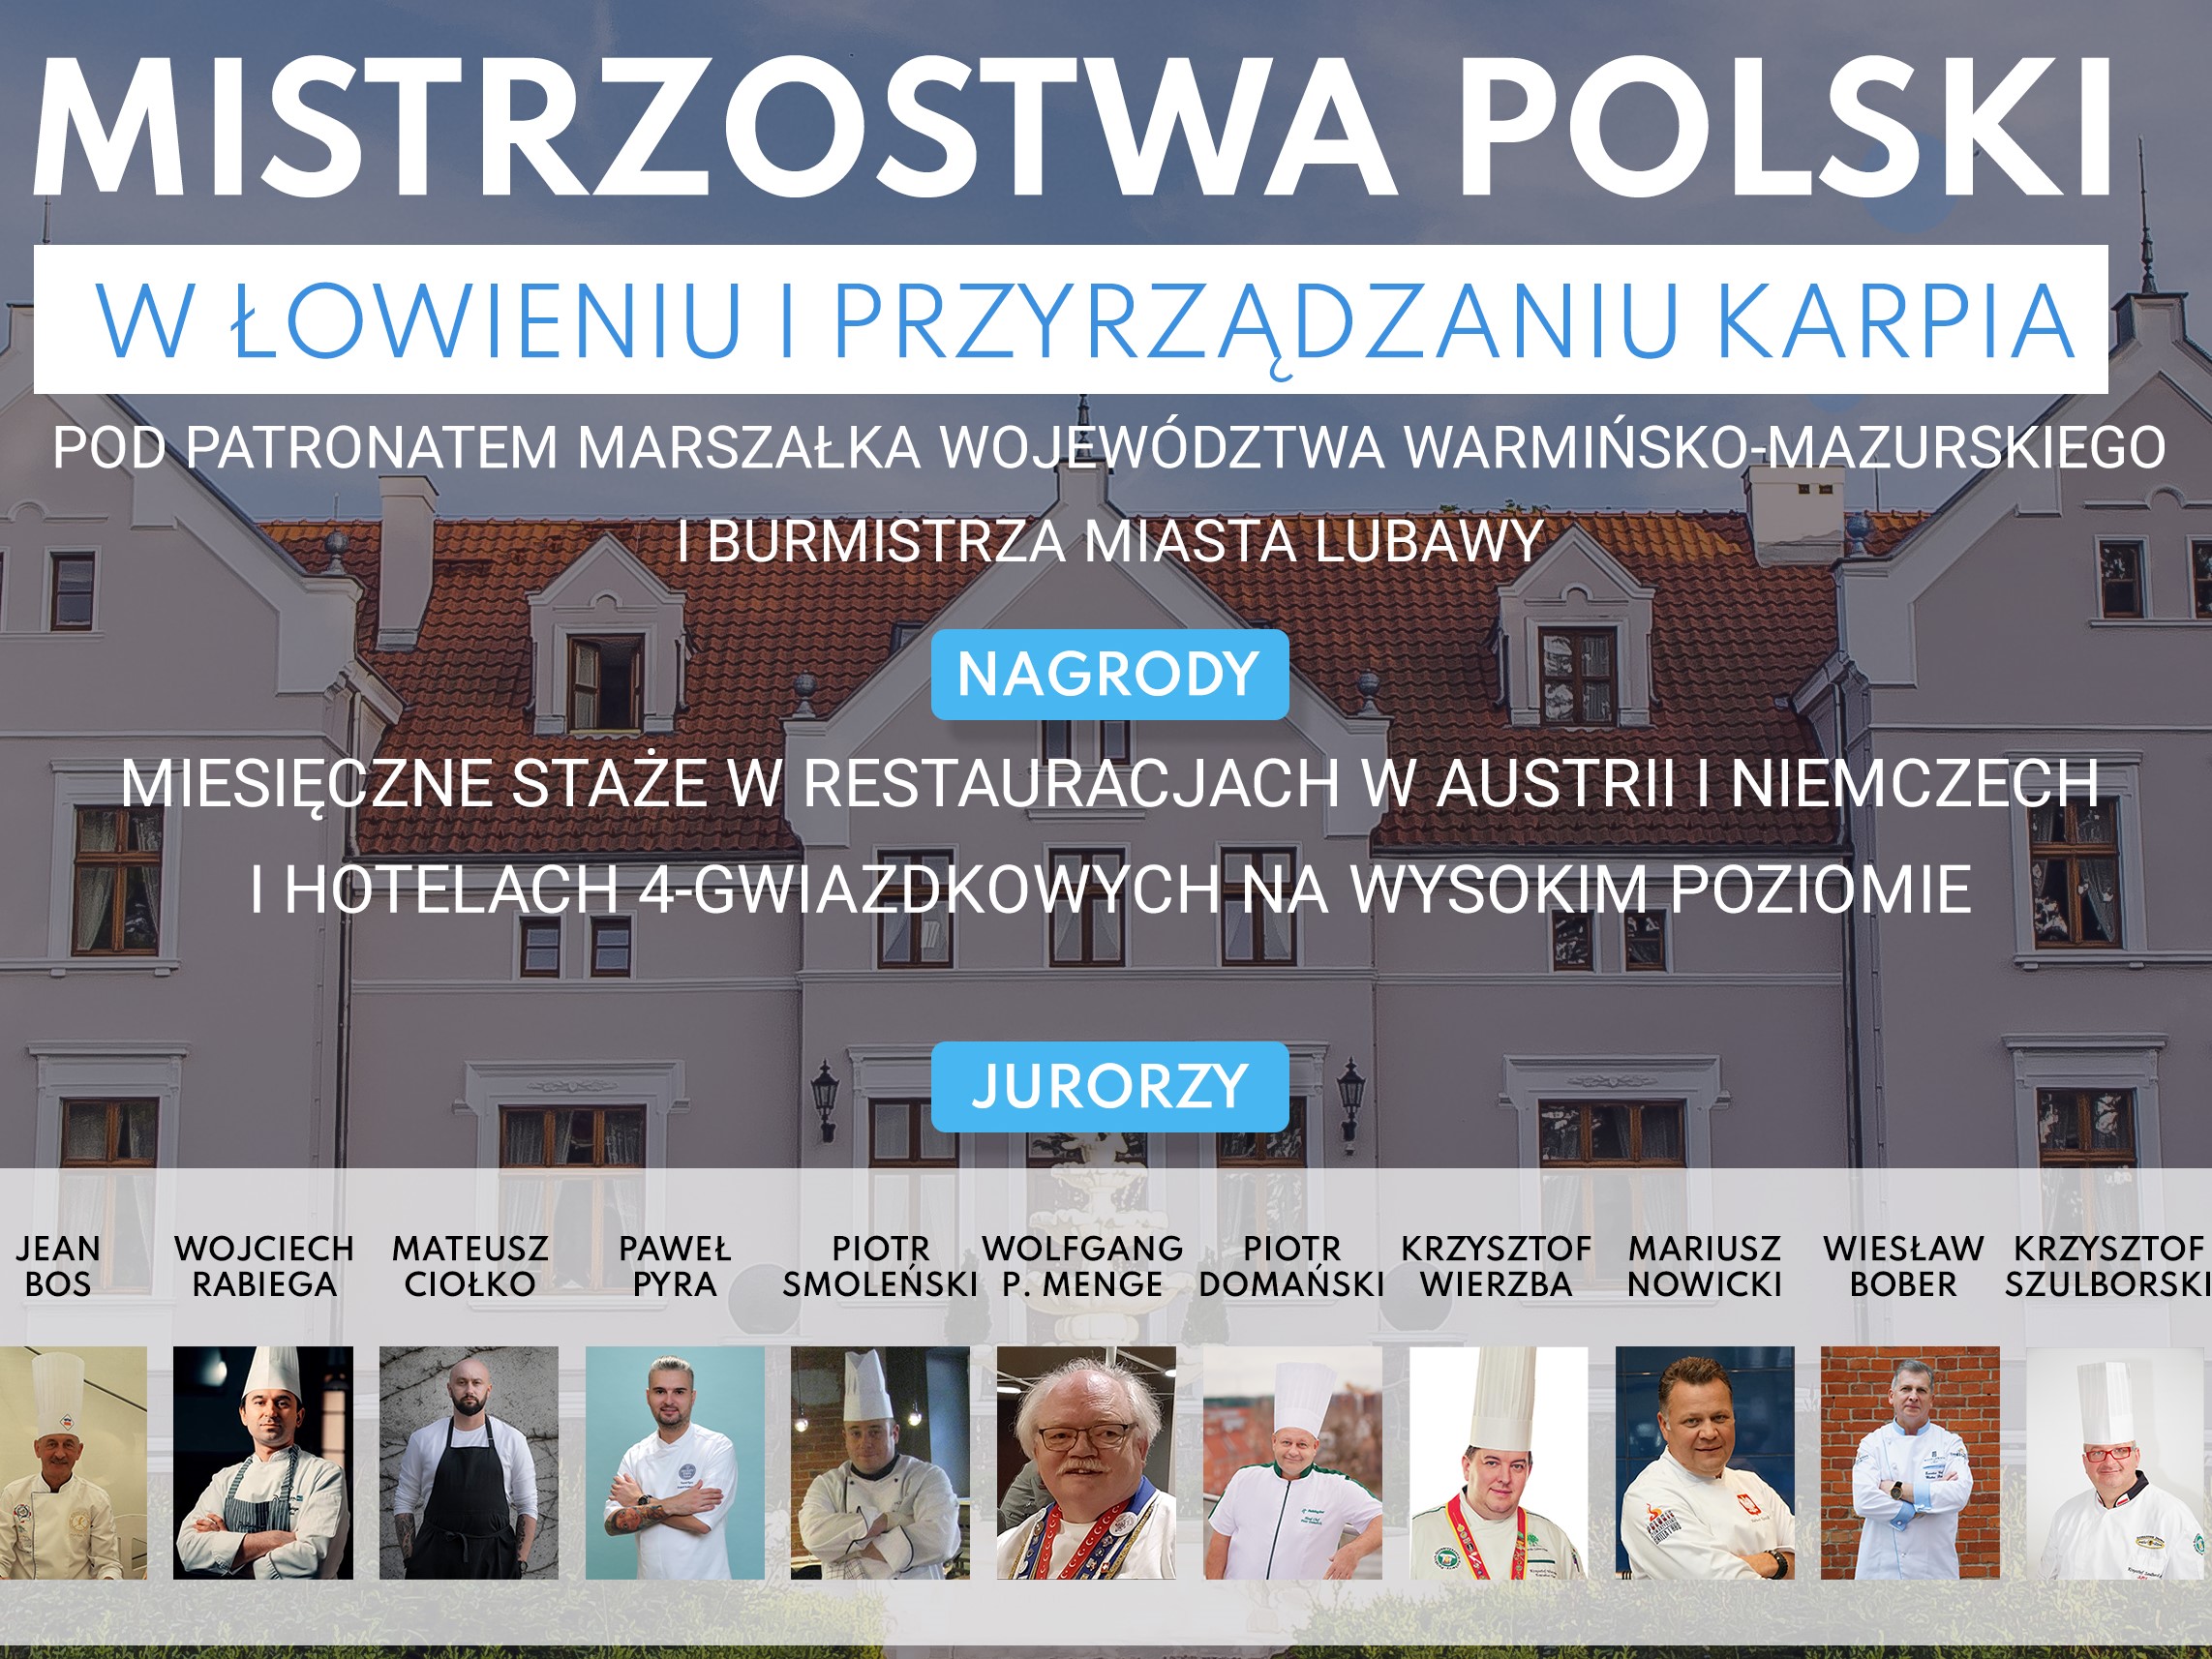 Ogólnopolski Konkurs z Łowienia i Przyrządzania Karpia – zgłoszenia do 9 kwietnia